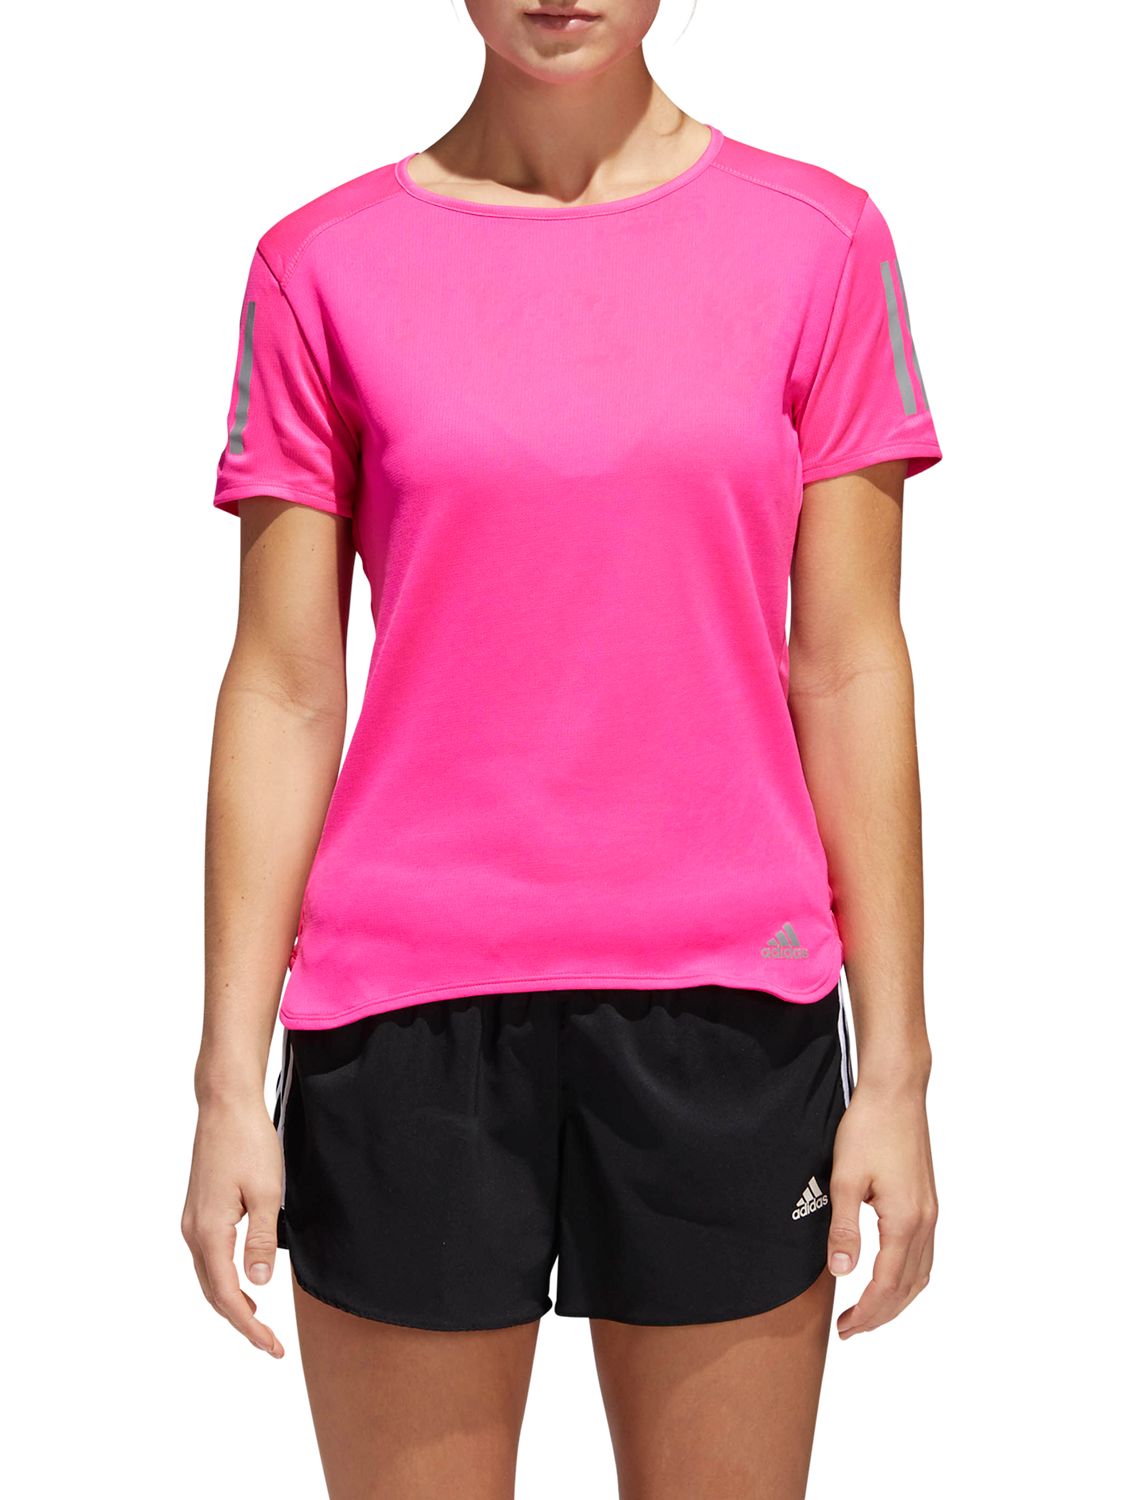 shock pink adidas shirt